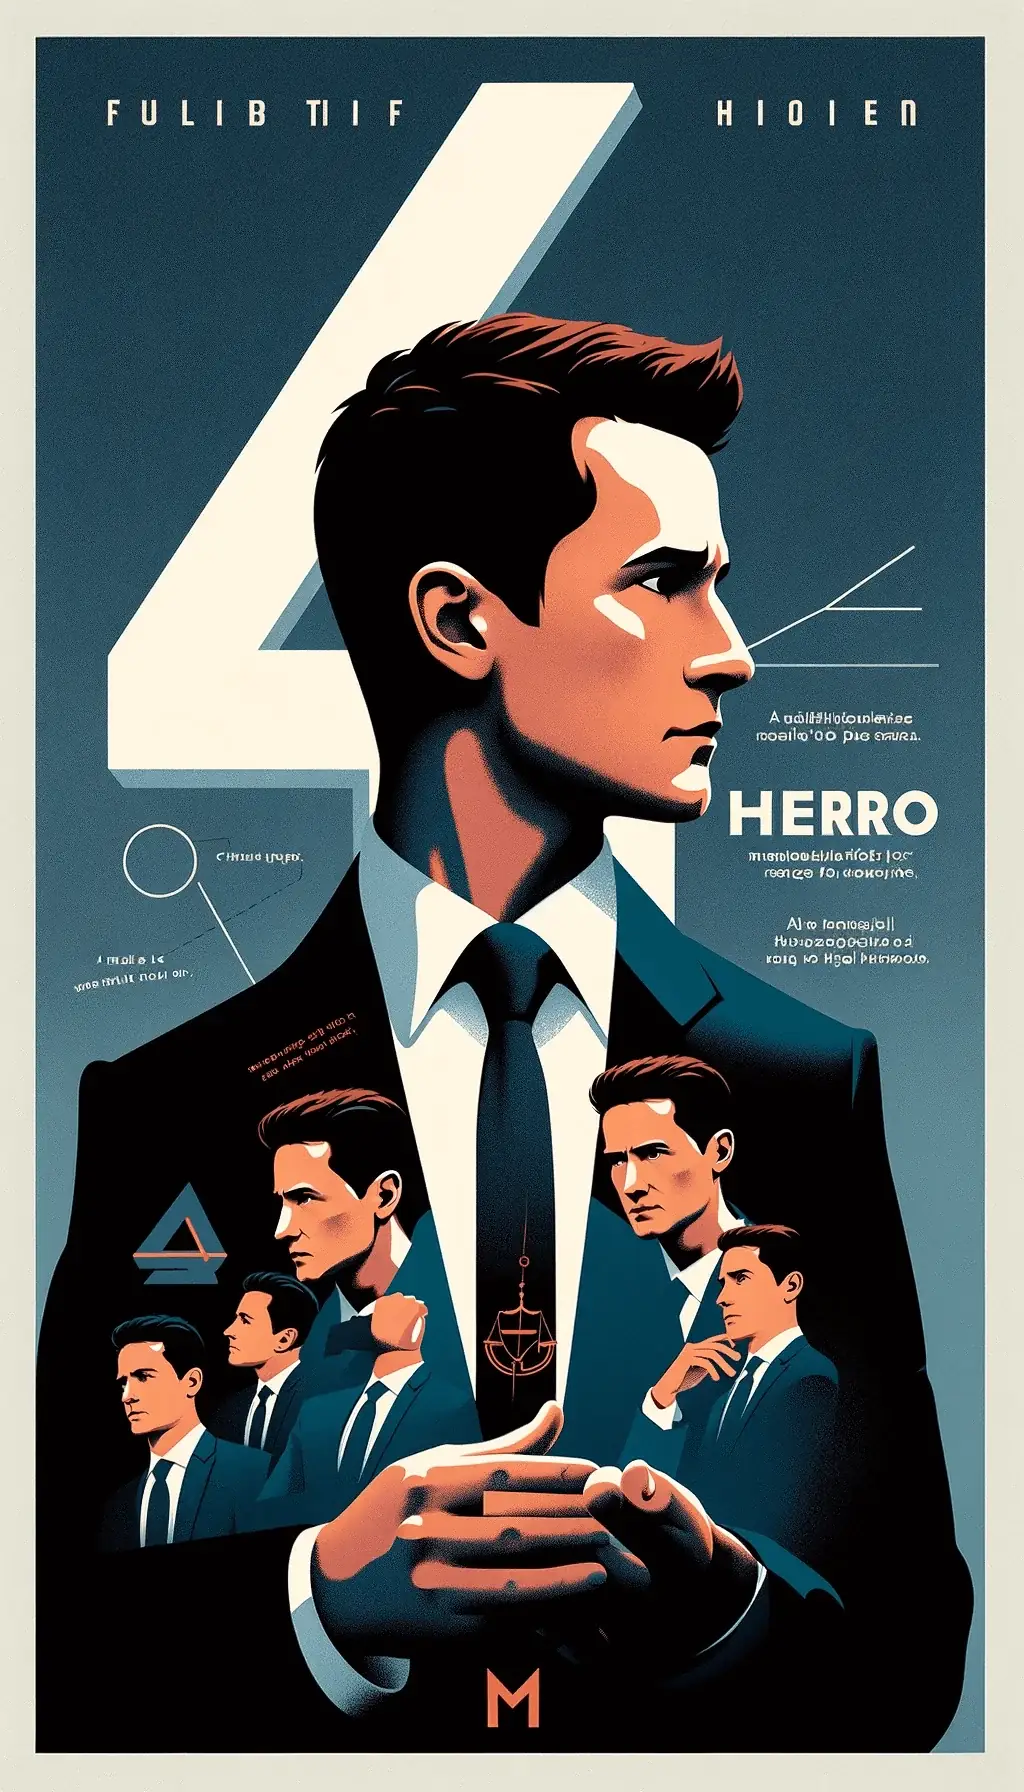 Постер 4-й серии с Джимми МакГиллом, отражения характера, цифра 4, тема героизма